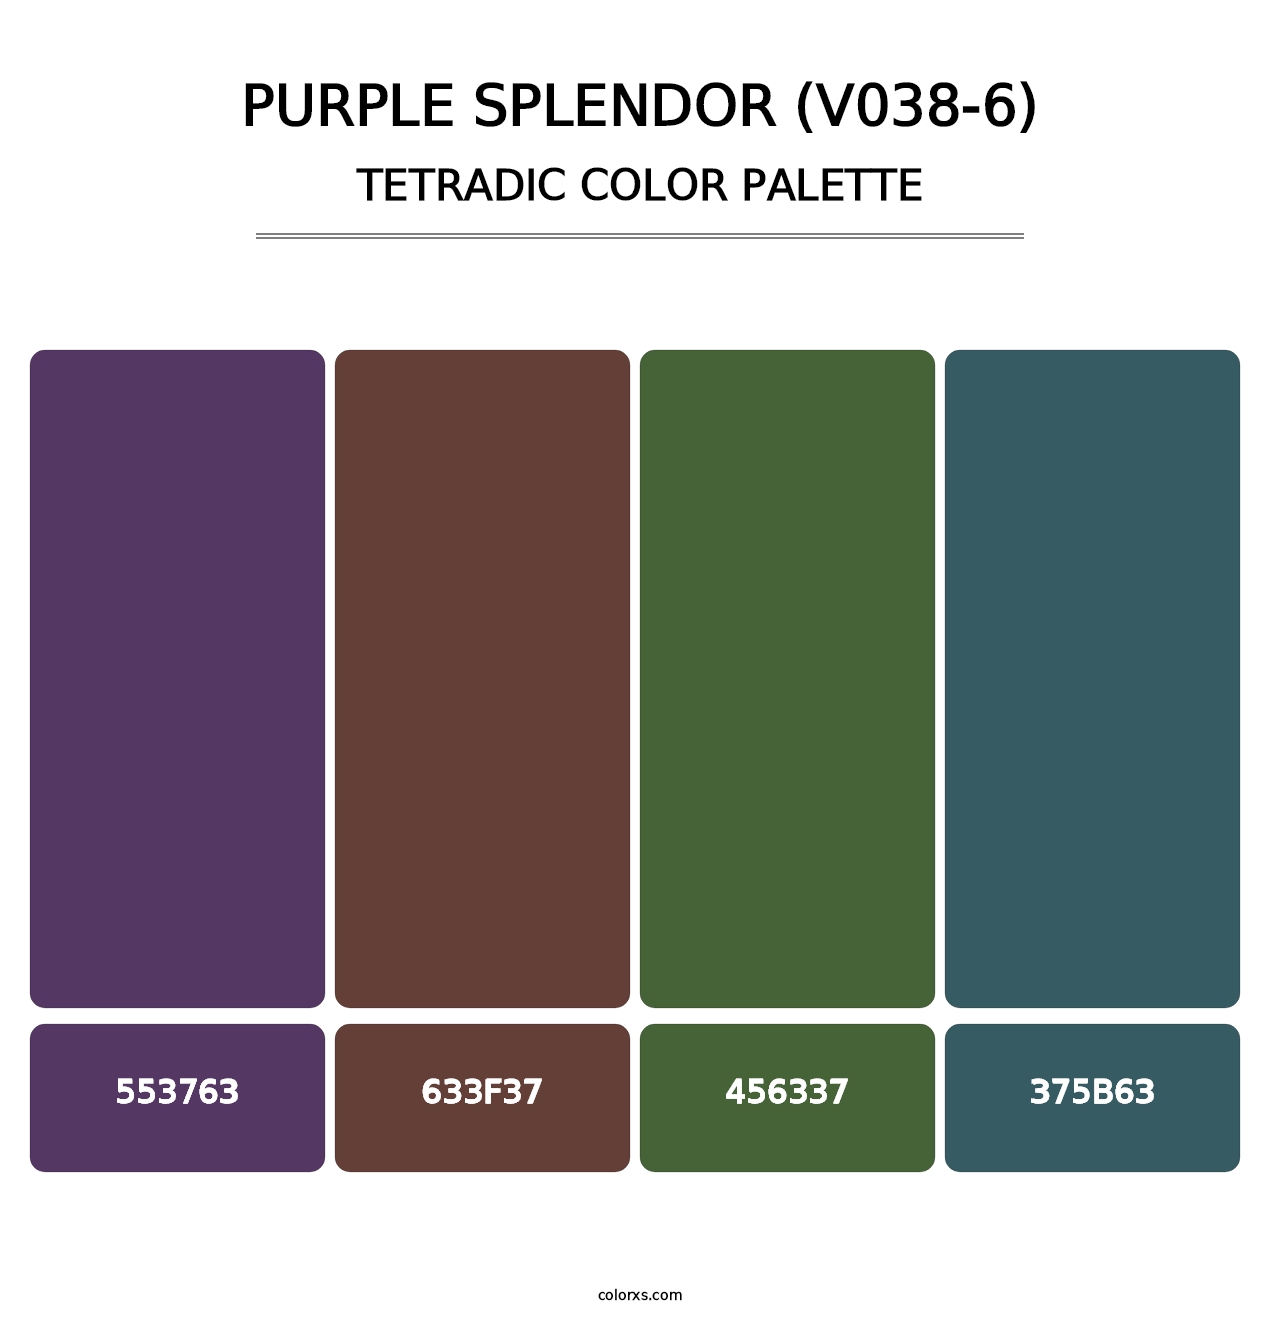 Purple Splendor (V038-6) - Tetradic Color Palette